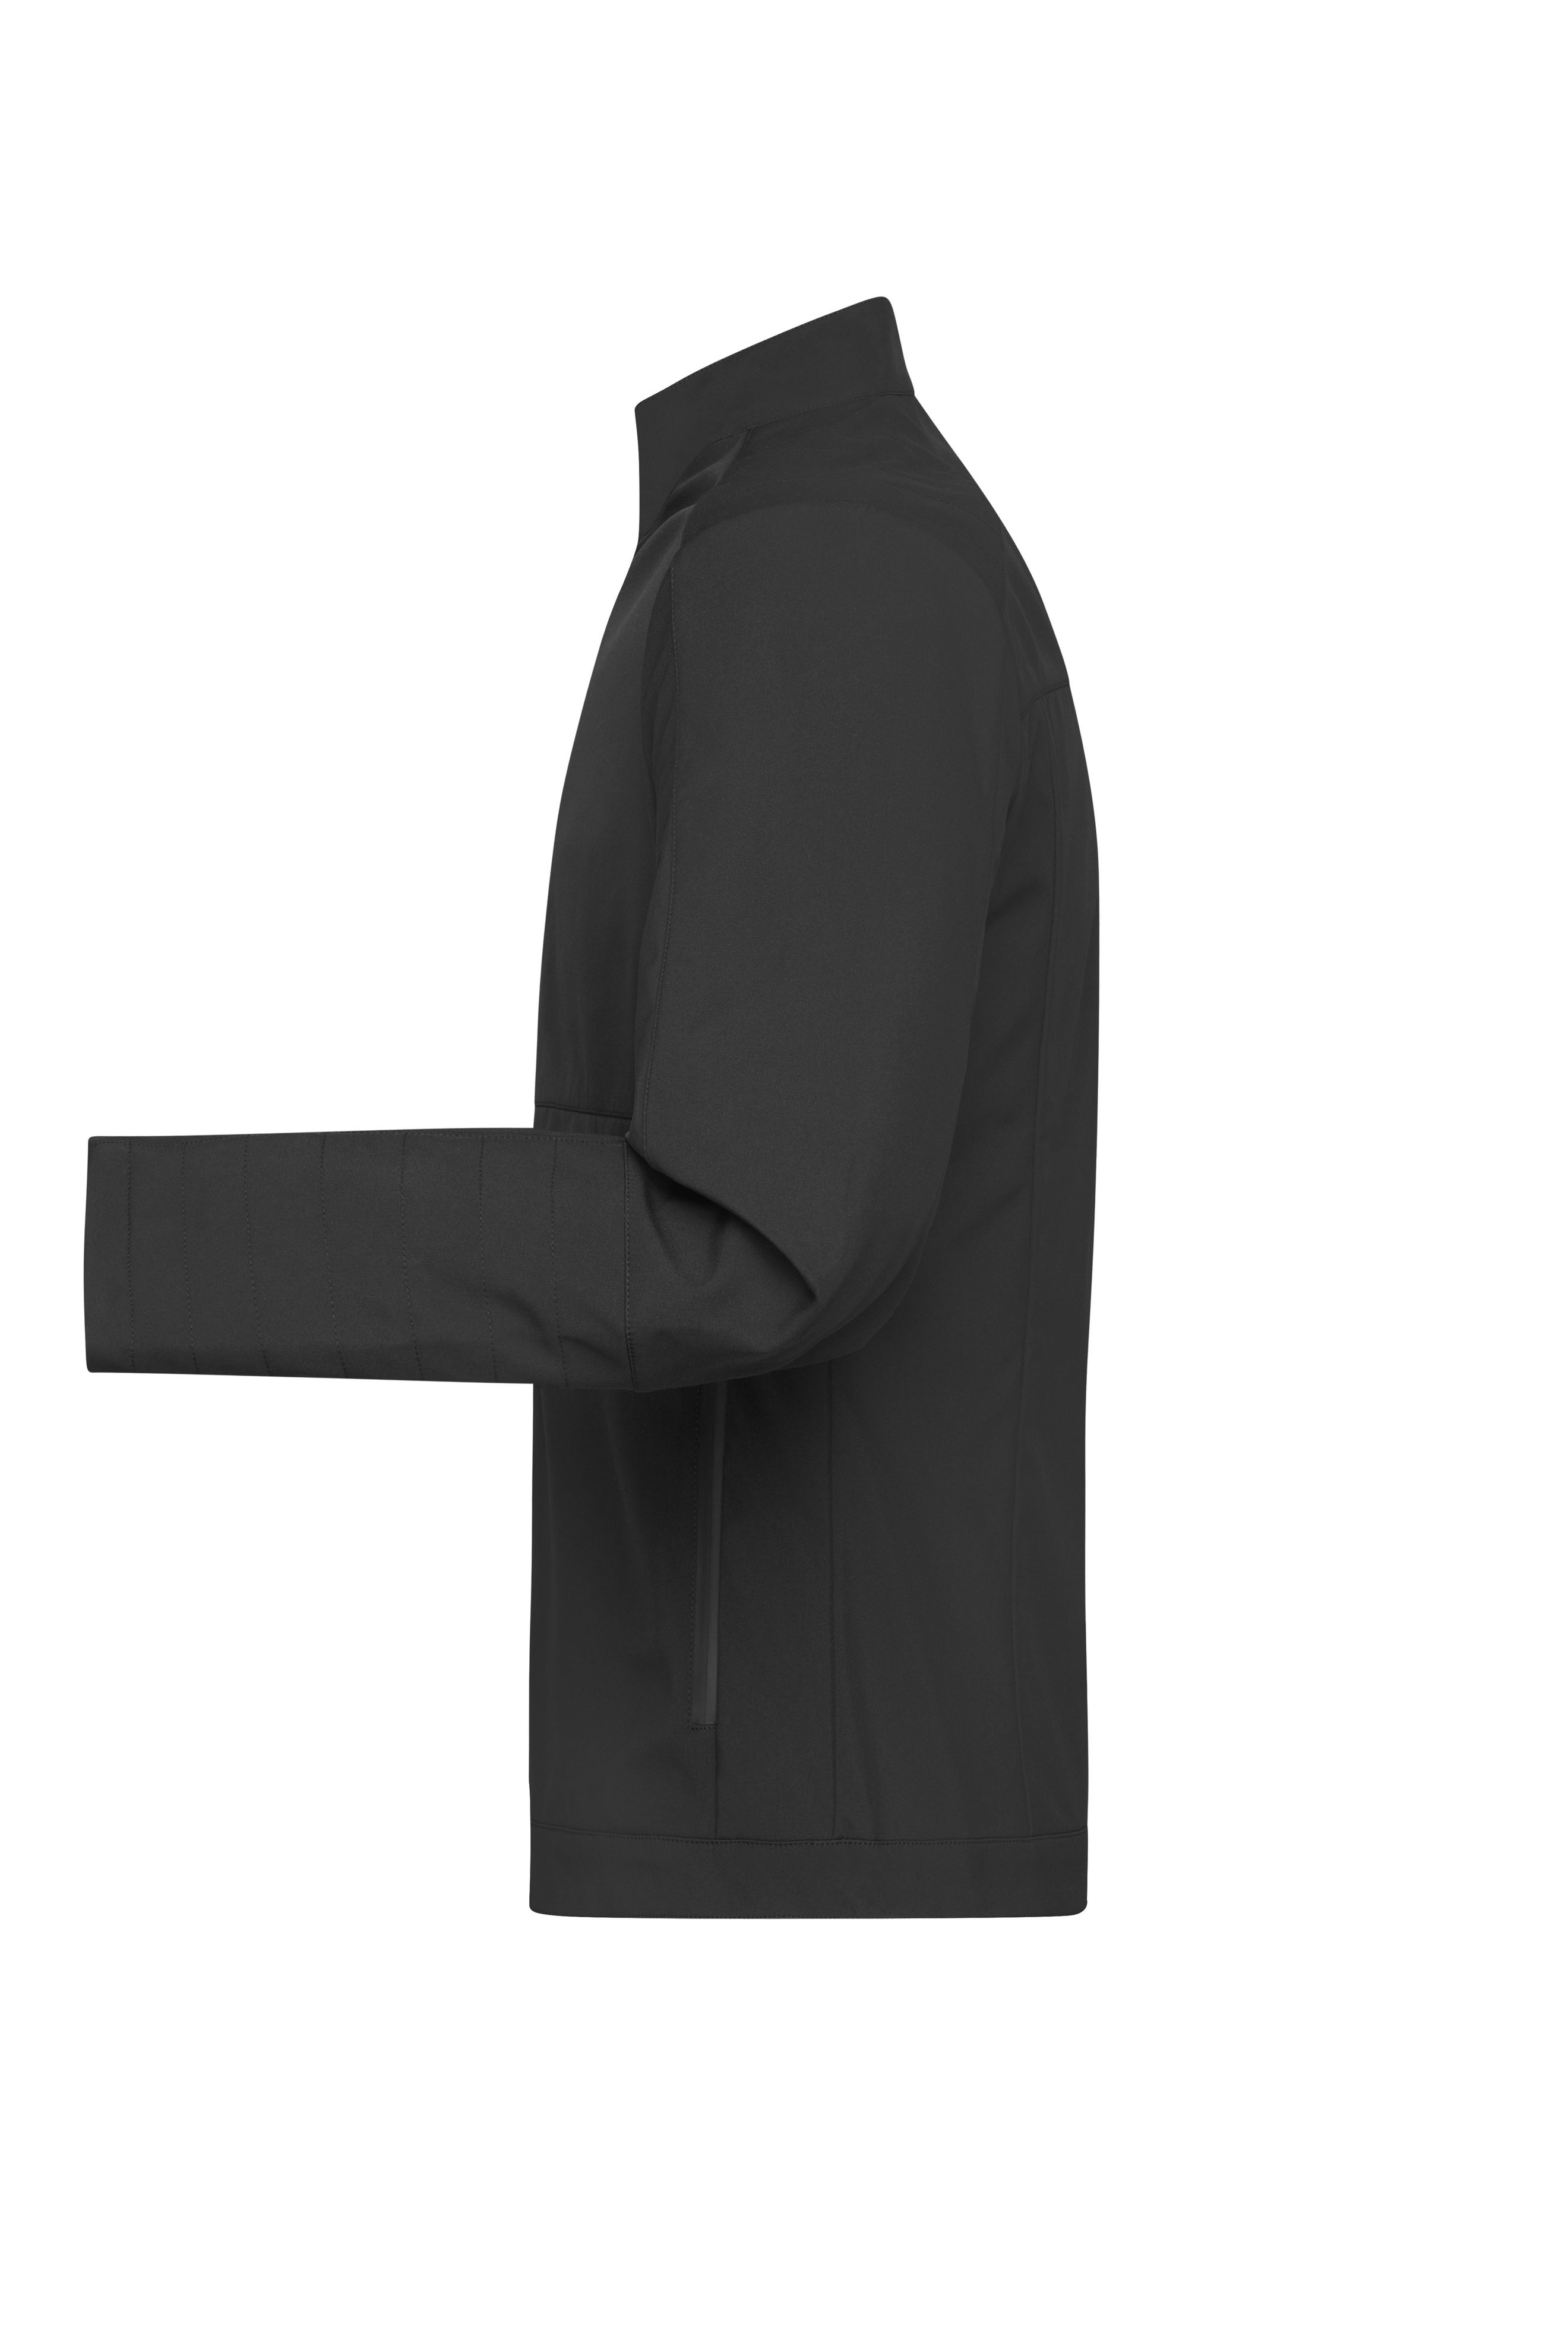 Men's Softshell Jacket JN1316 Softshelljacke in sportlichem Design